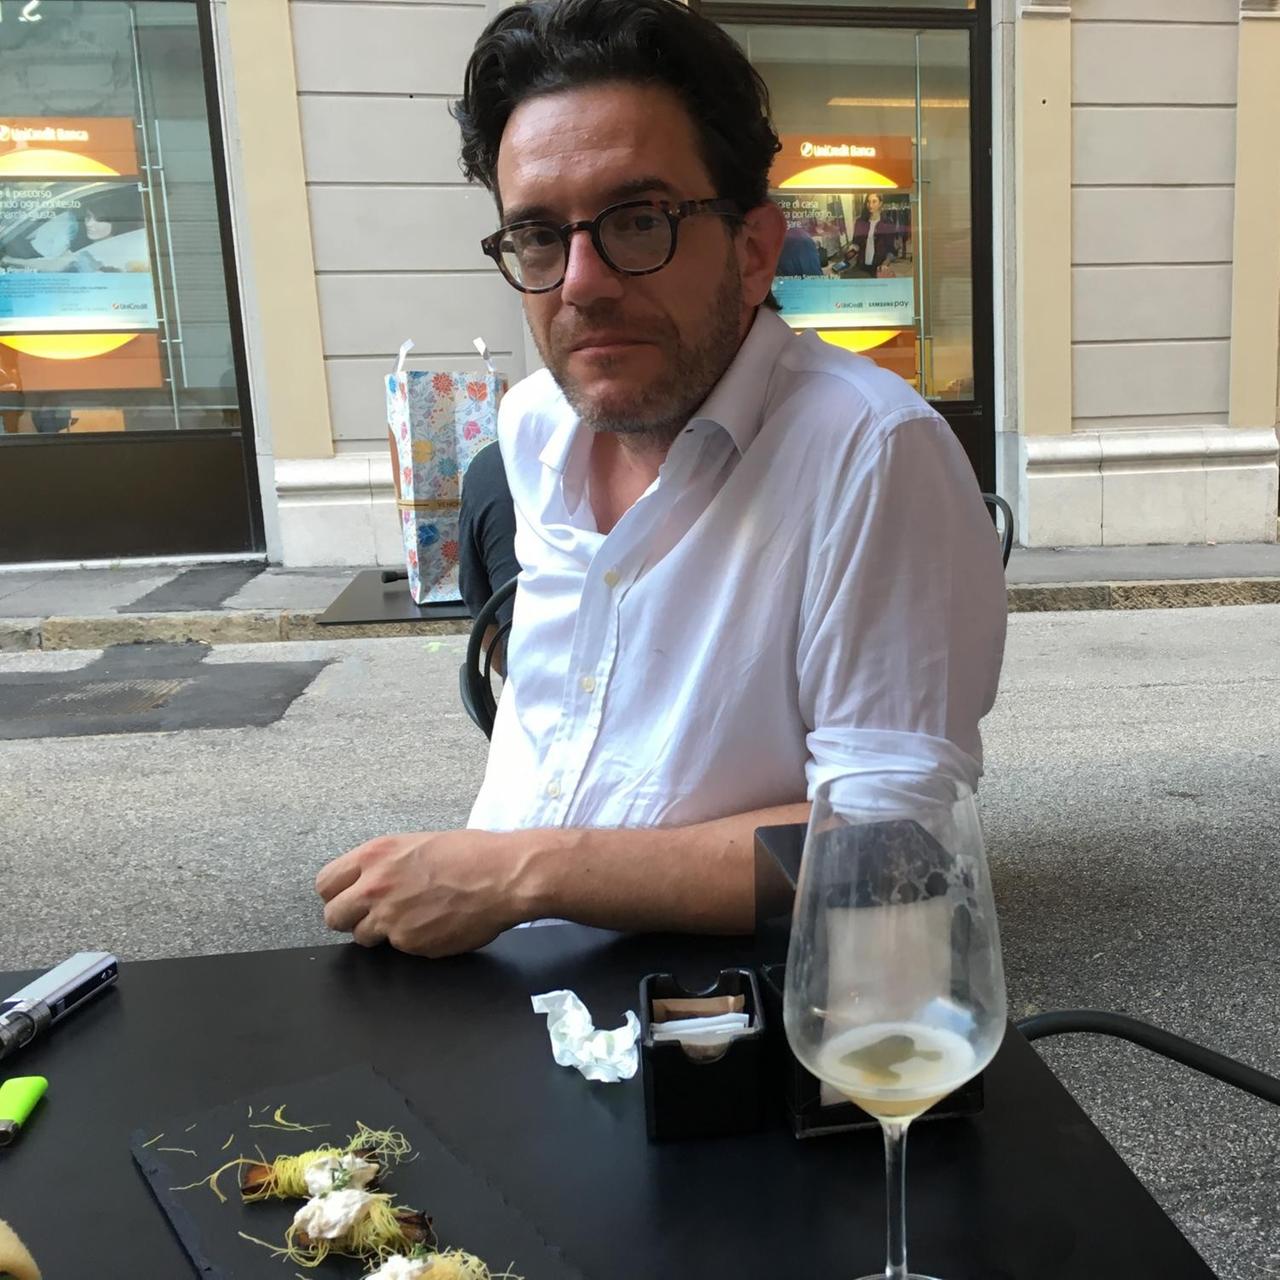 Der Café-Besitzer Alexandros Delithanassis sitzt an einem Tisch auf dem ein fast leeres Weinglas und eine Platte mit Häppchen stehen